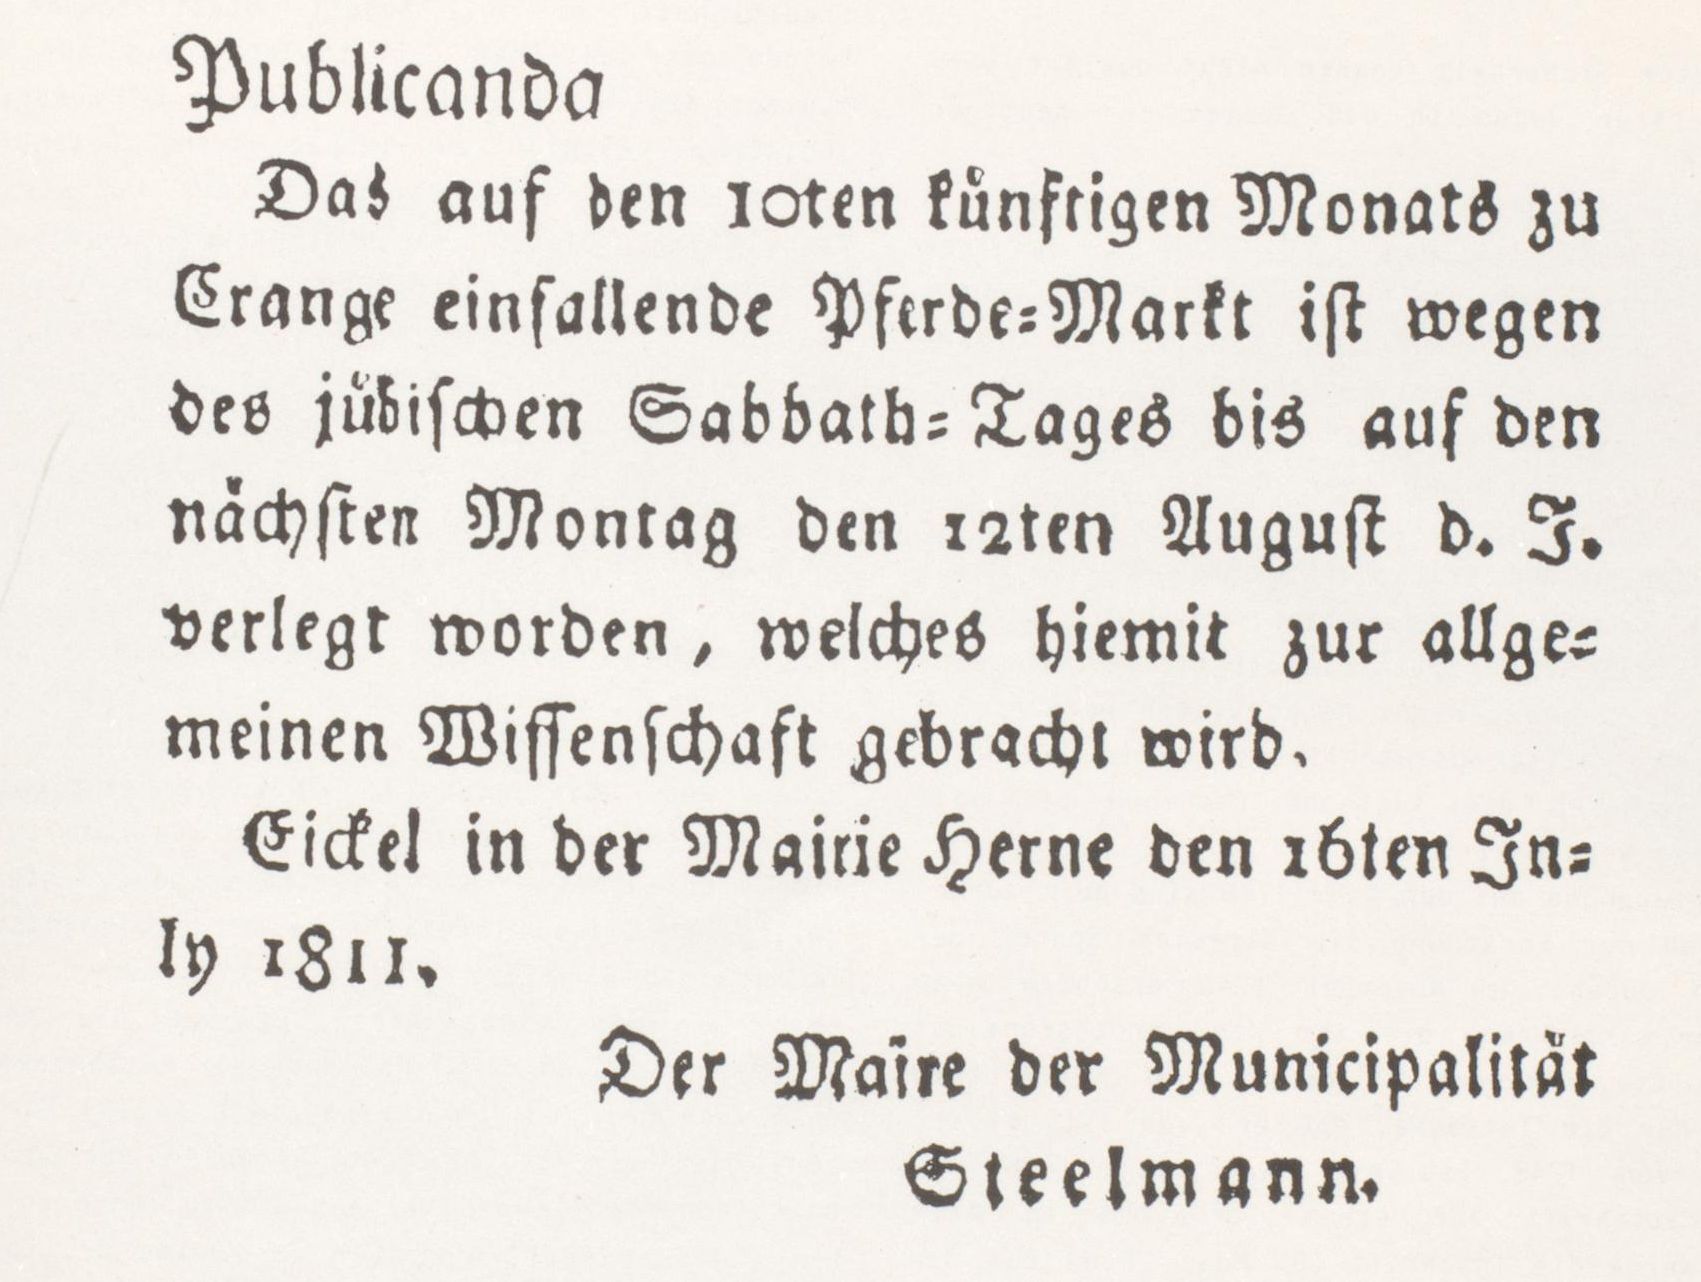 Bekanntmachung von Maire(Bürgermeister) Steelmann der Mairie(Bürgermeisteri) Herne betreffs Verlegung des Pferdemarktes in Crange, 1811.jpg